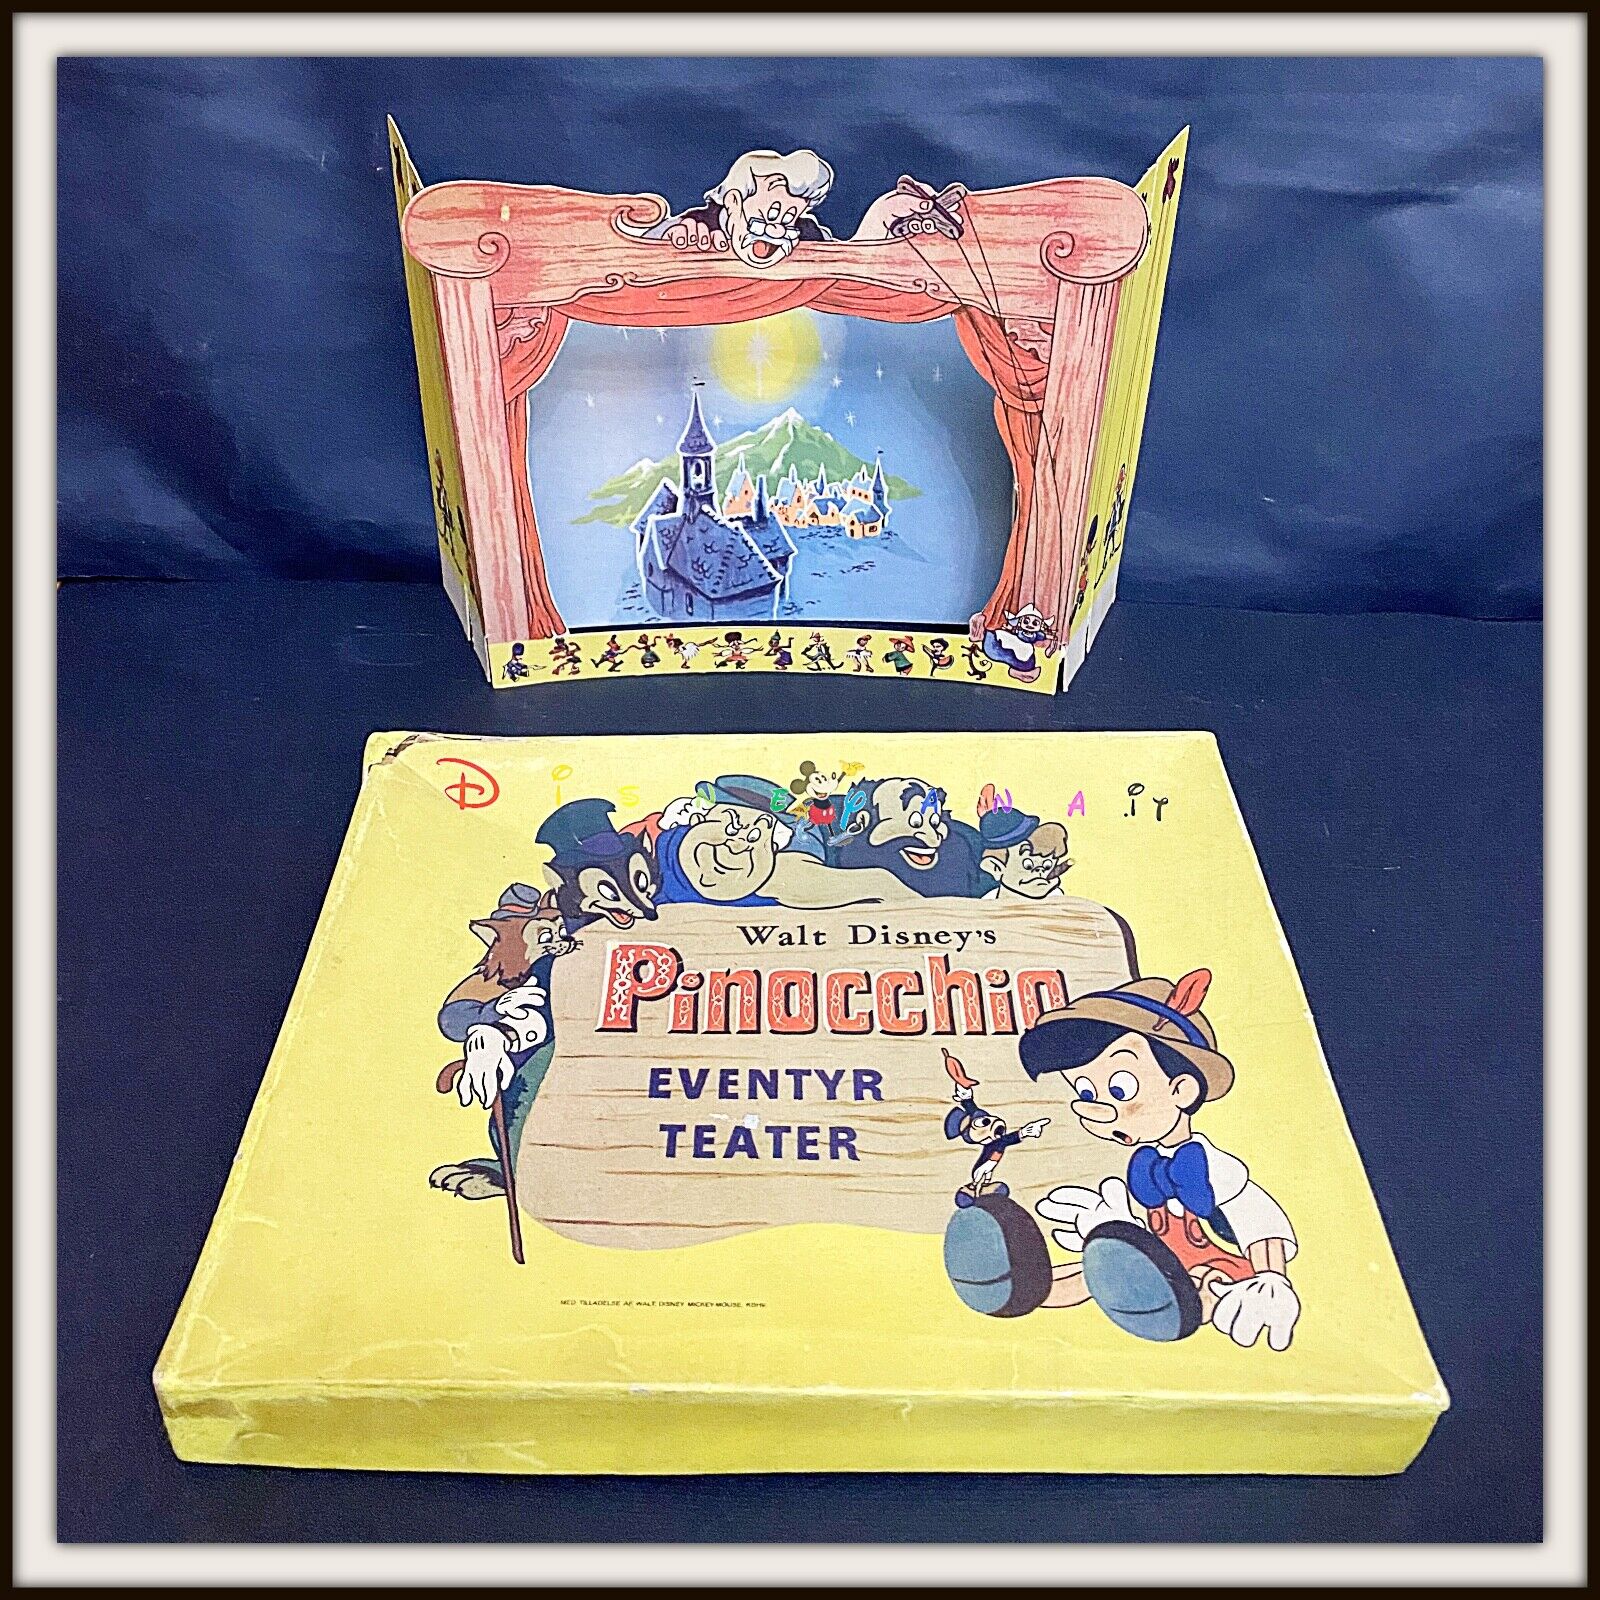 ⭐ PINOCCHIO Eventyr TEATER Disney - Denmark 1940 - DISNEYANA.IT ⭐